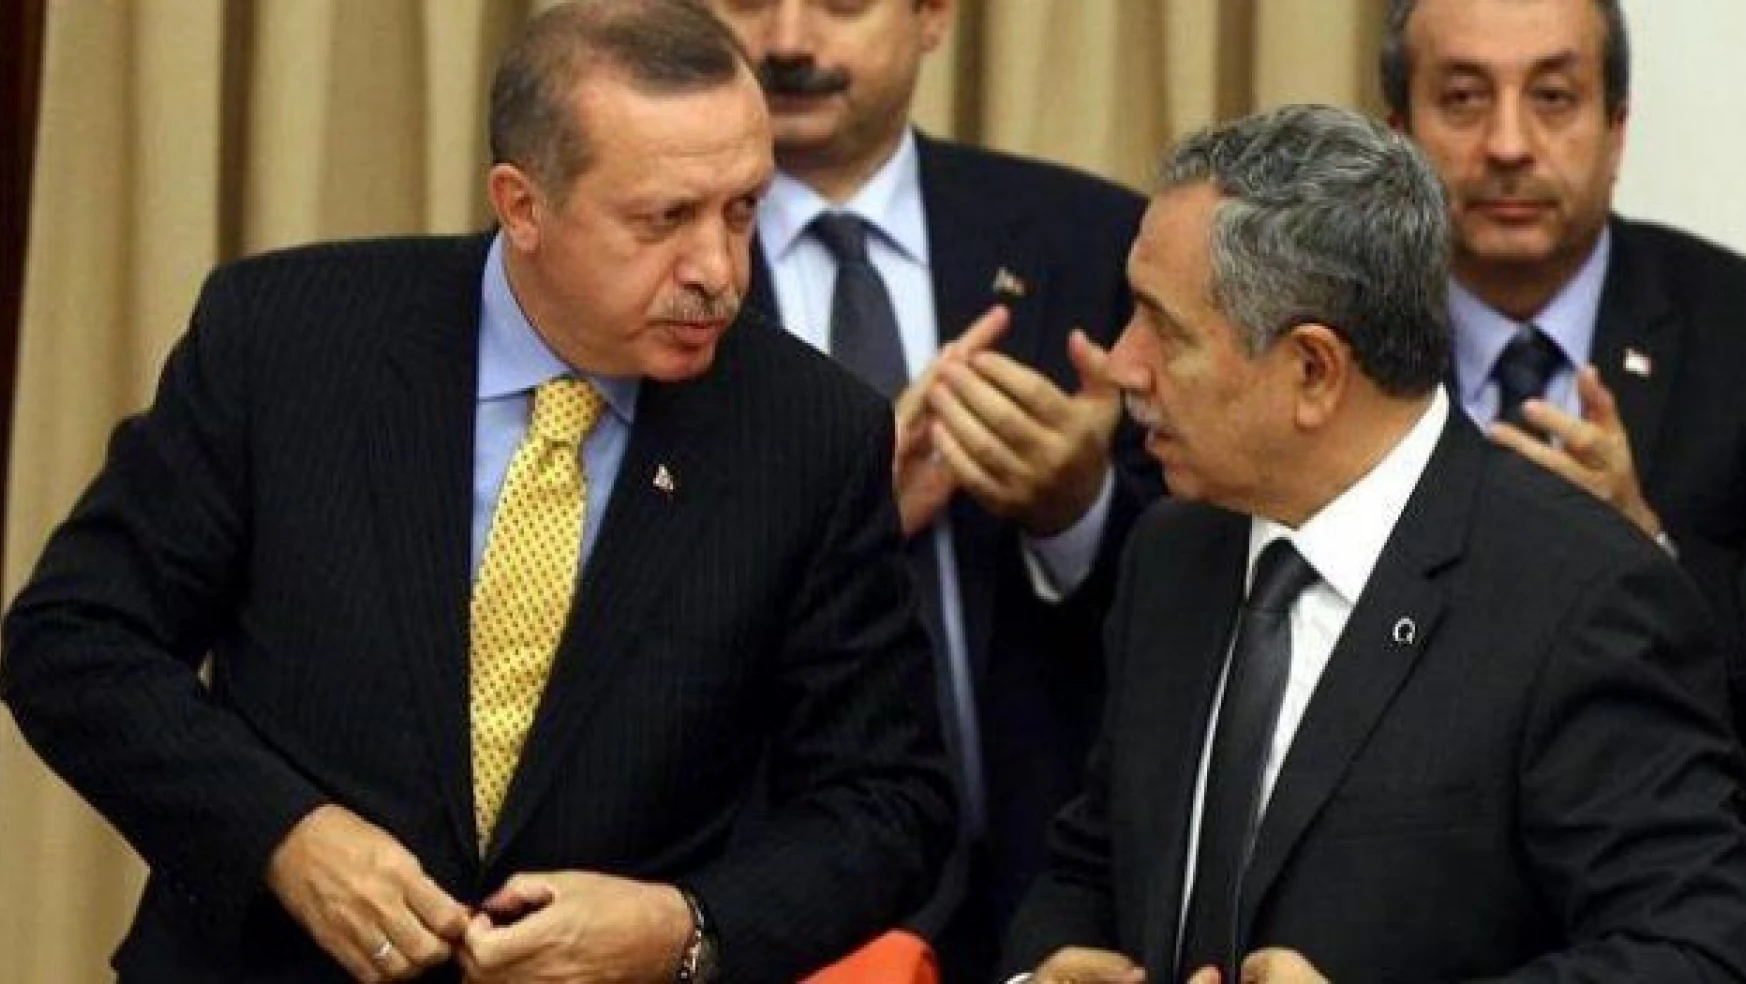 Bülent Arınç vakası: AK Parti'nin vicdanı kanıyor